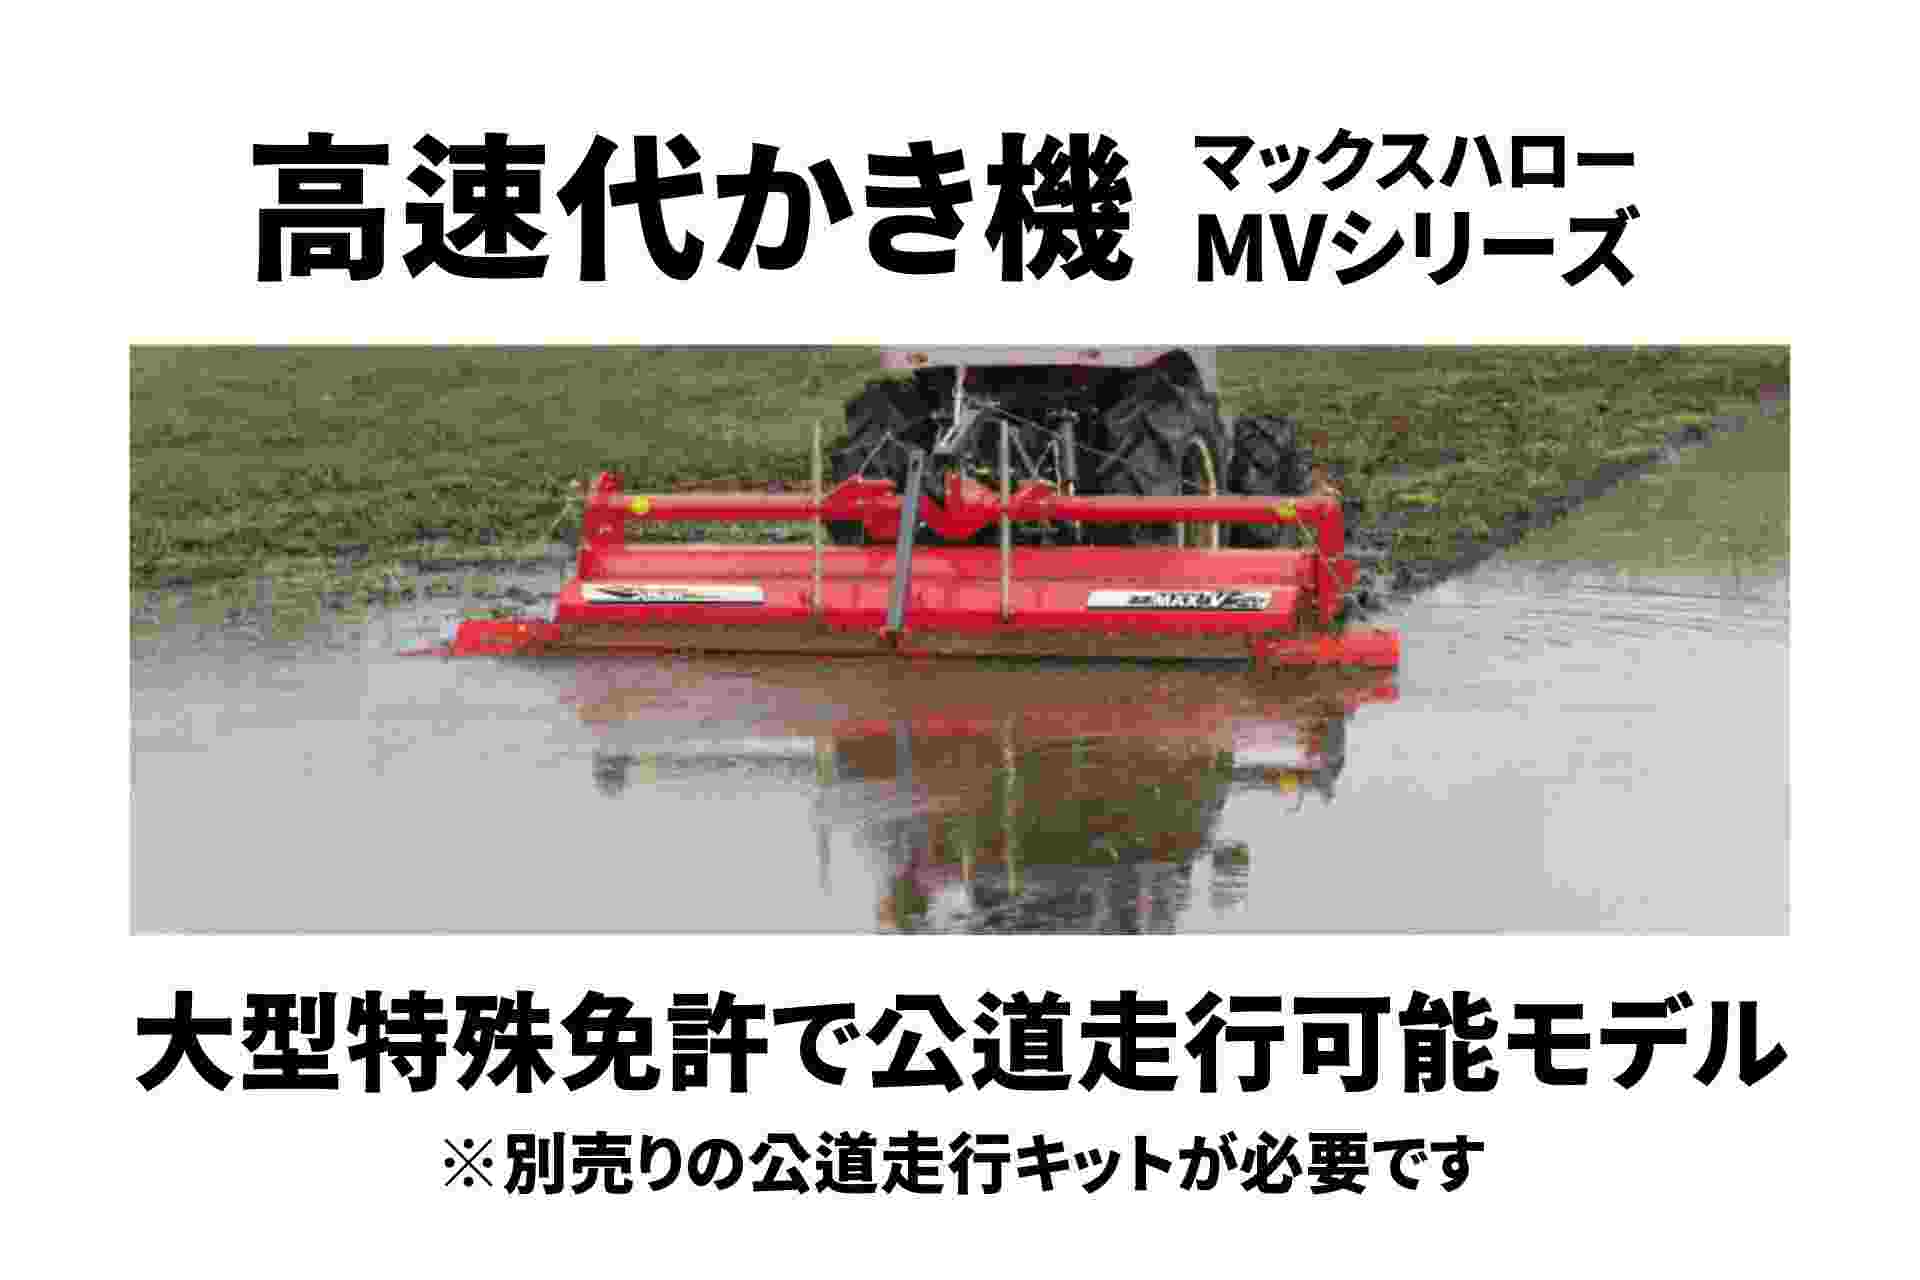 高速代かき機 マックスハロー ドライブハロー ササキ MVシリーズ MV220TL-3S